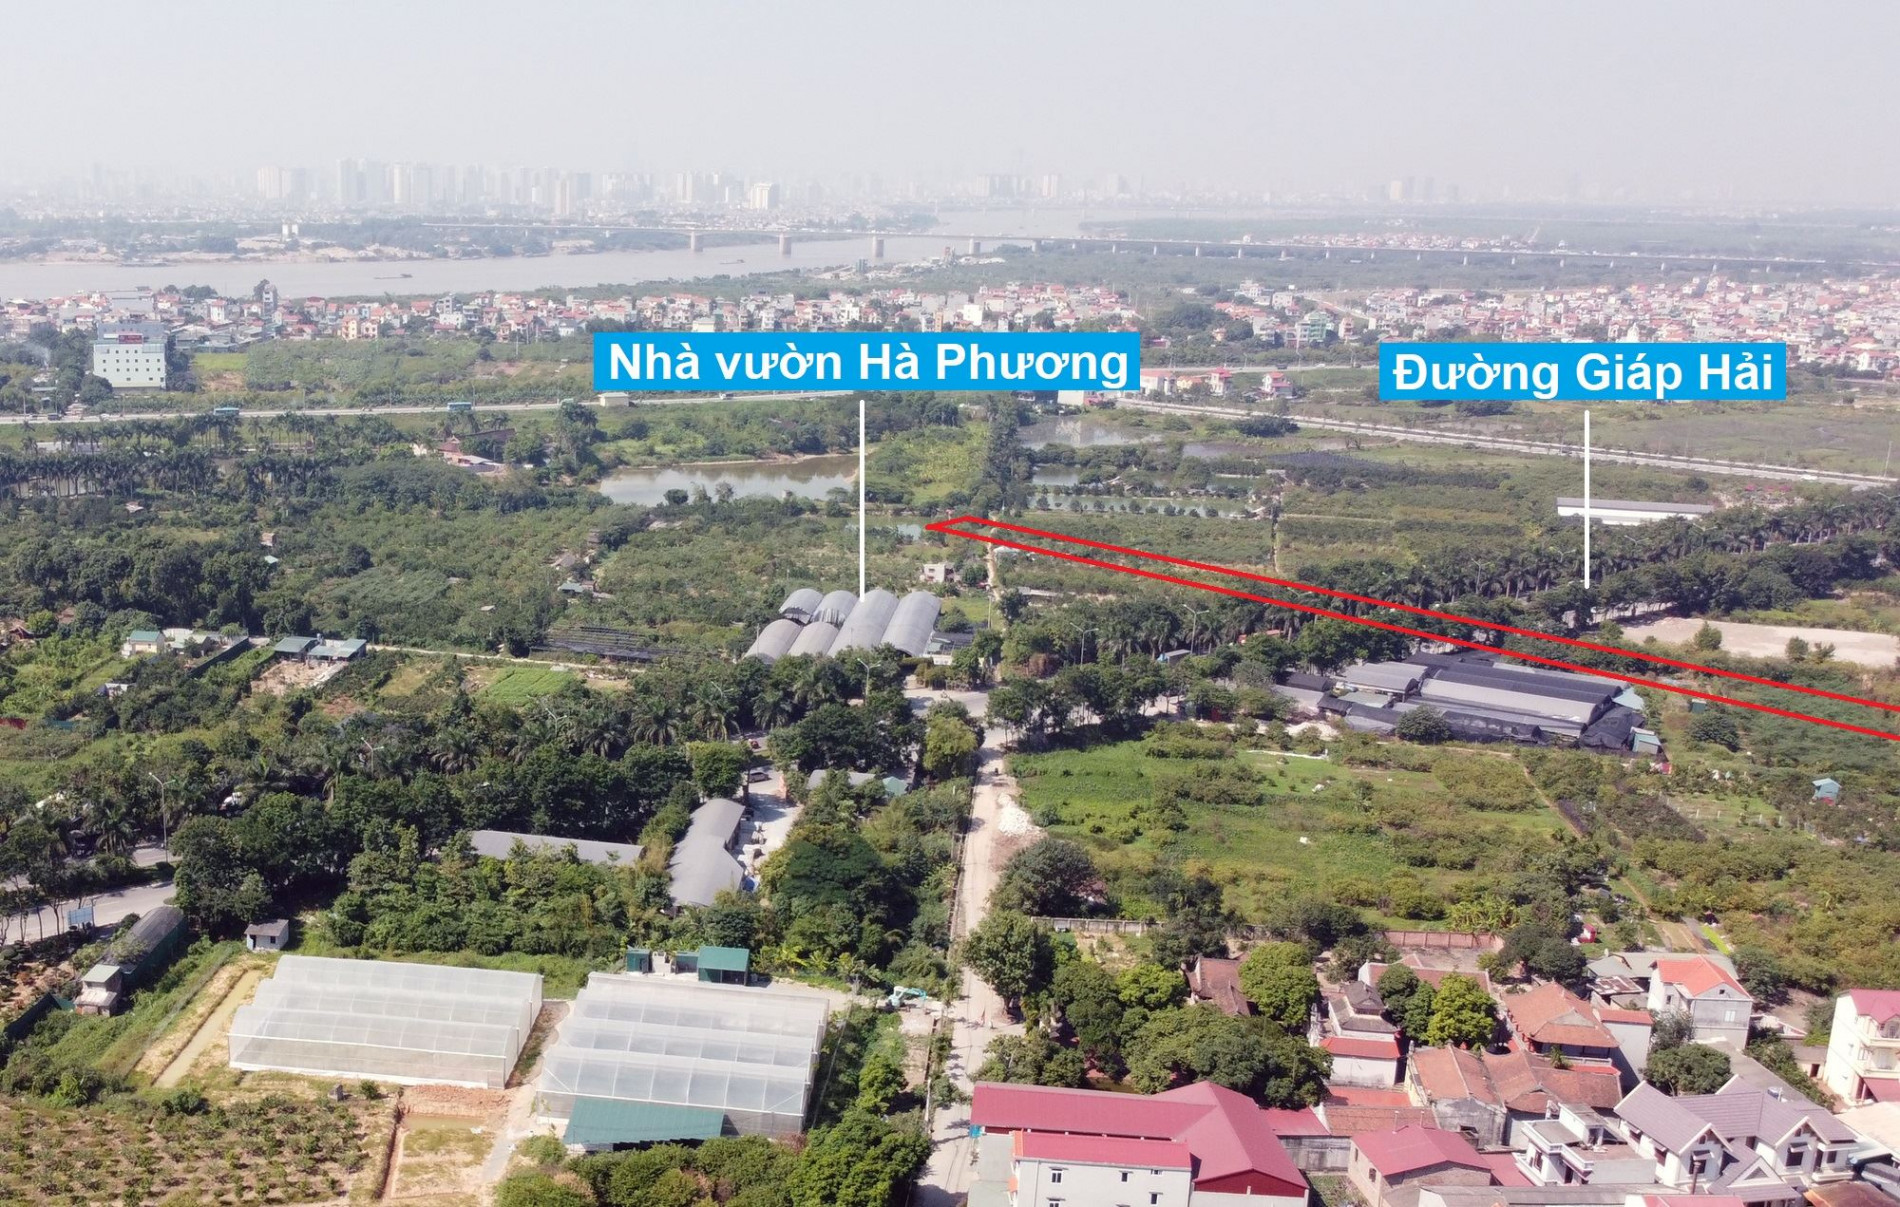 Đường sẽ mở theo quy hoạch ở xã Đa Tốn, Gia Lâm, Hà Nội (phần 2)